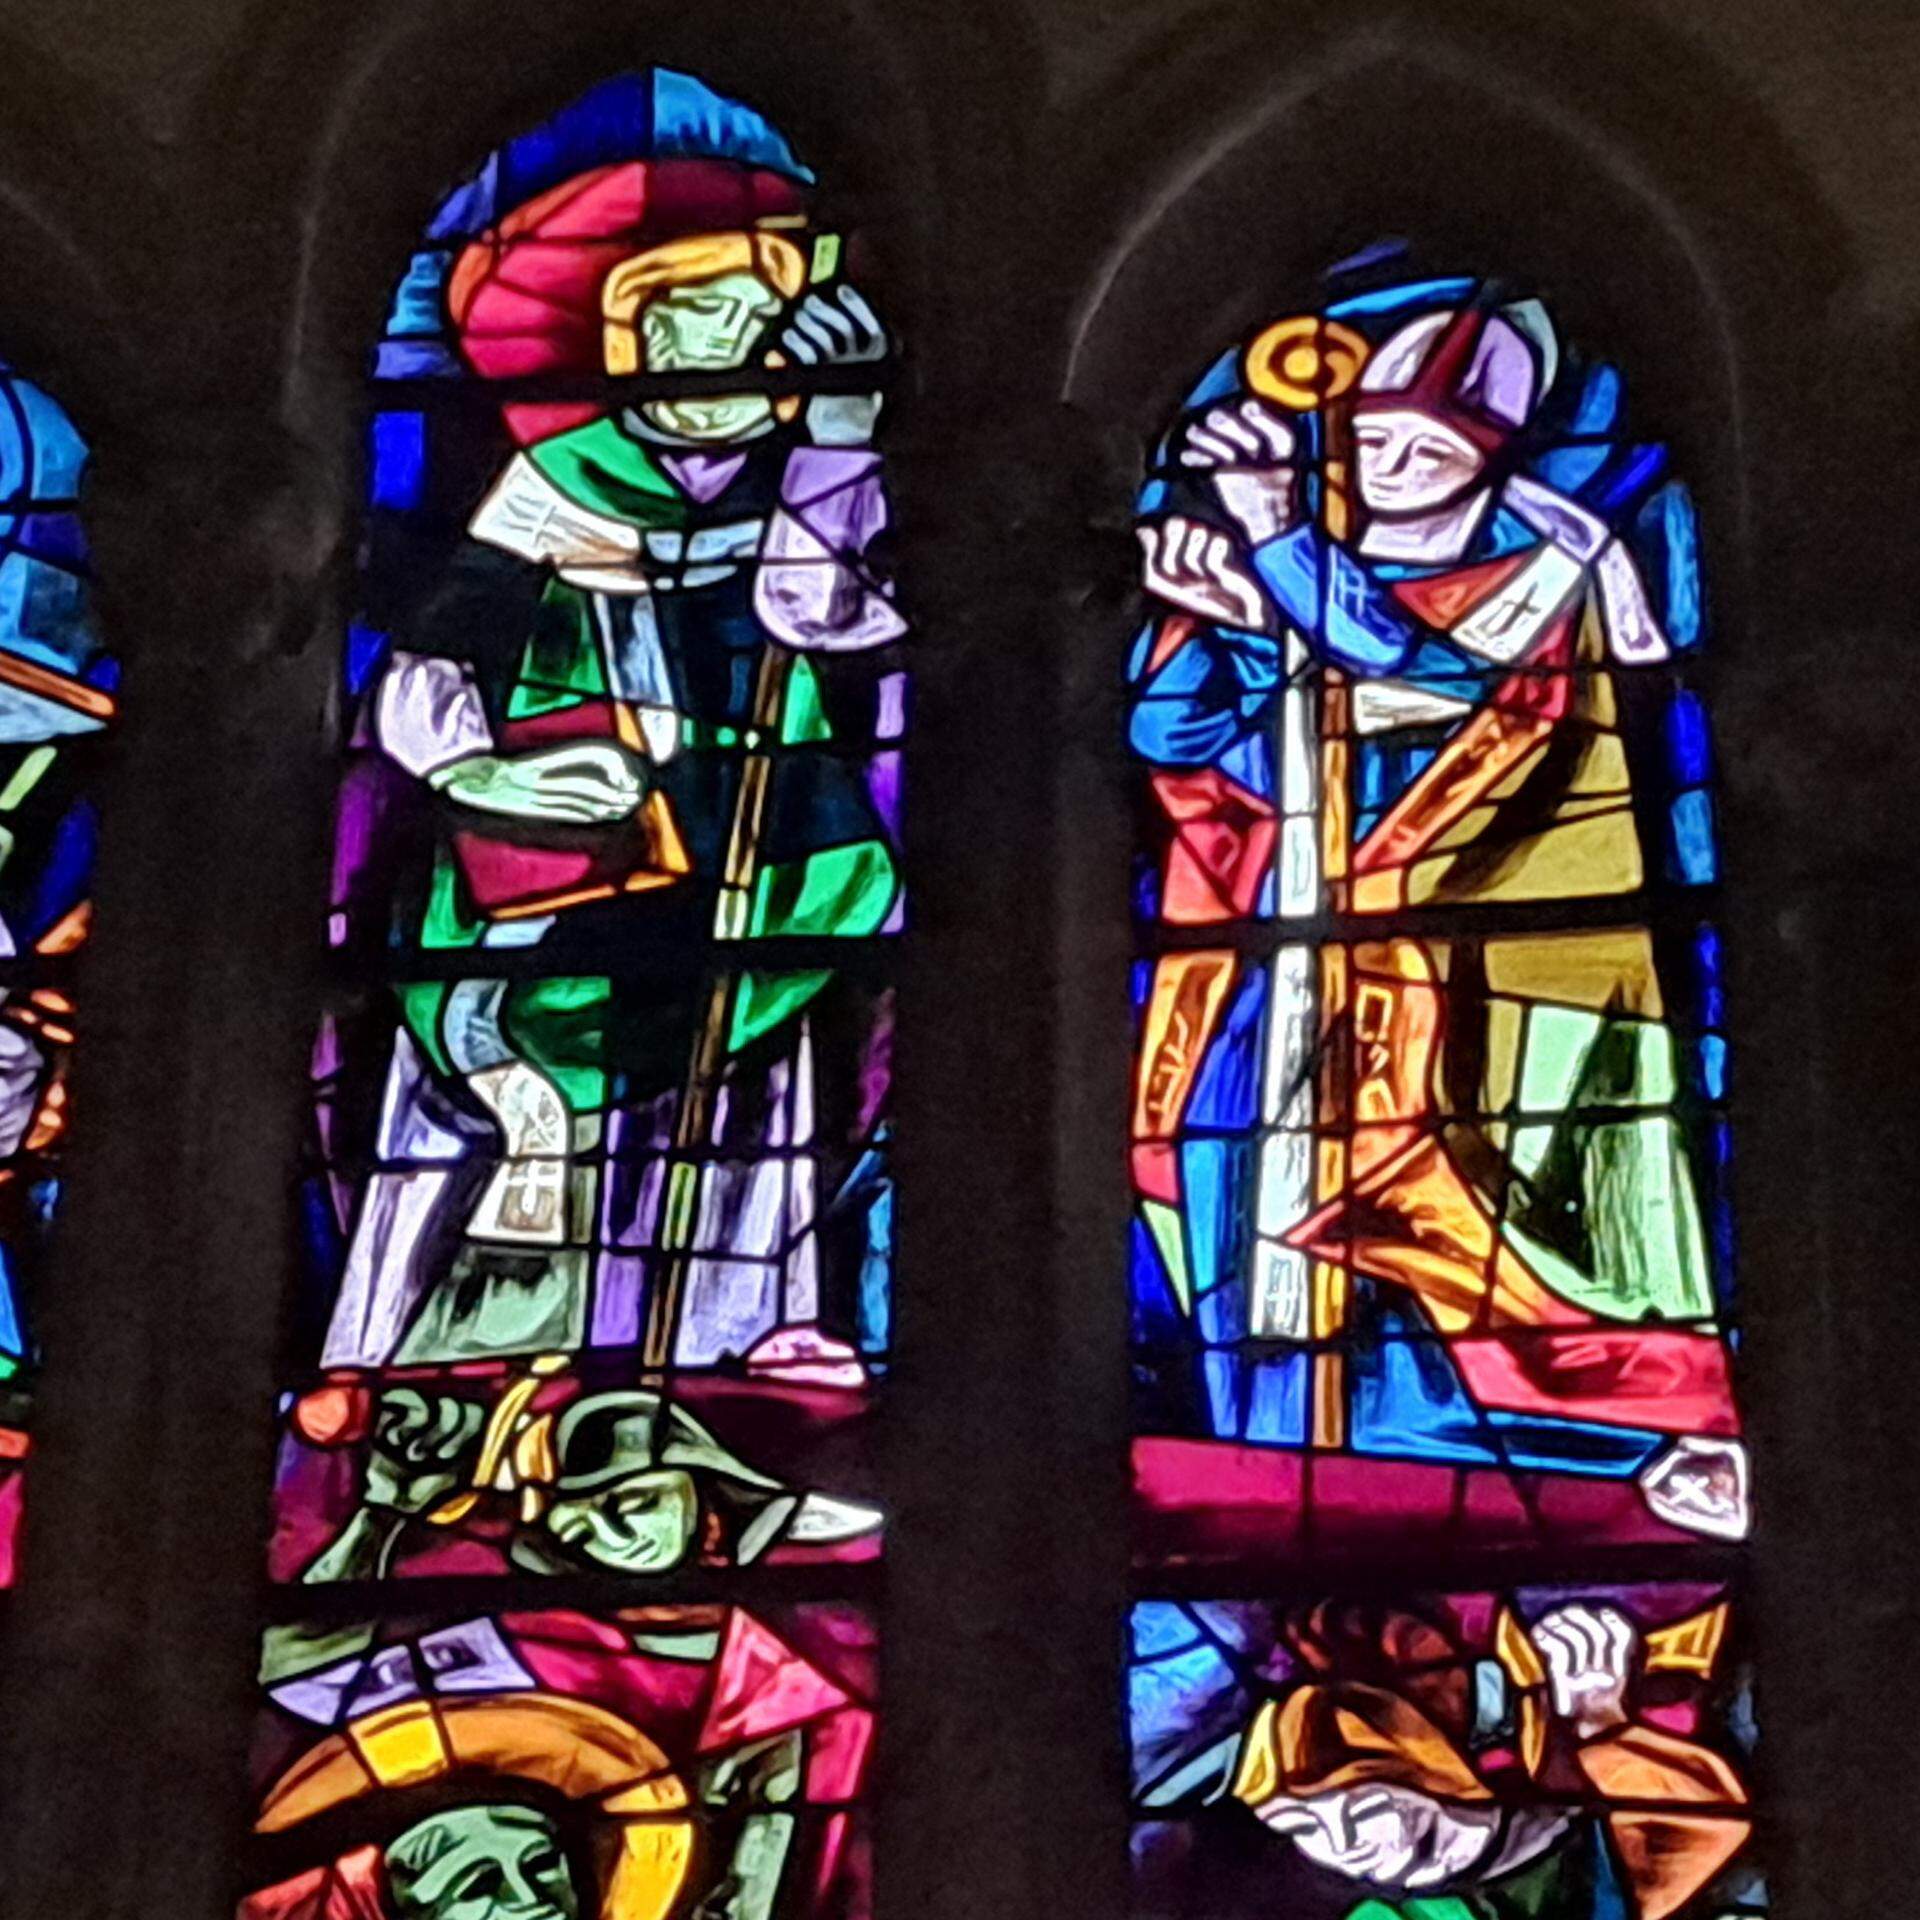 Heilige Doppelspitze: Bonifatius und sein Lehrmeister Willibrord (hier im Glasfenster von Louis Barillet in der Echternacher Basilika).